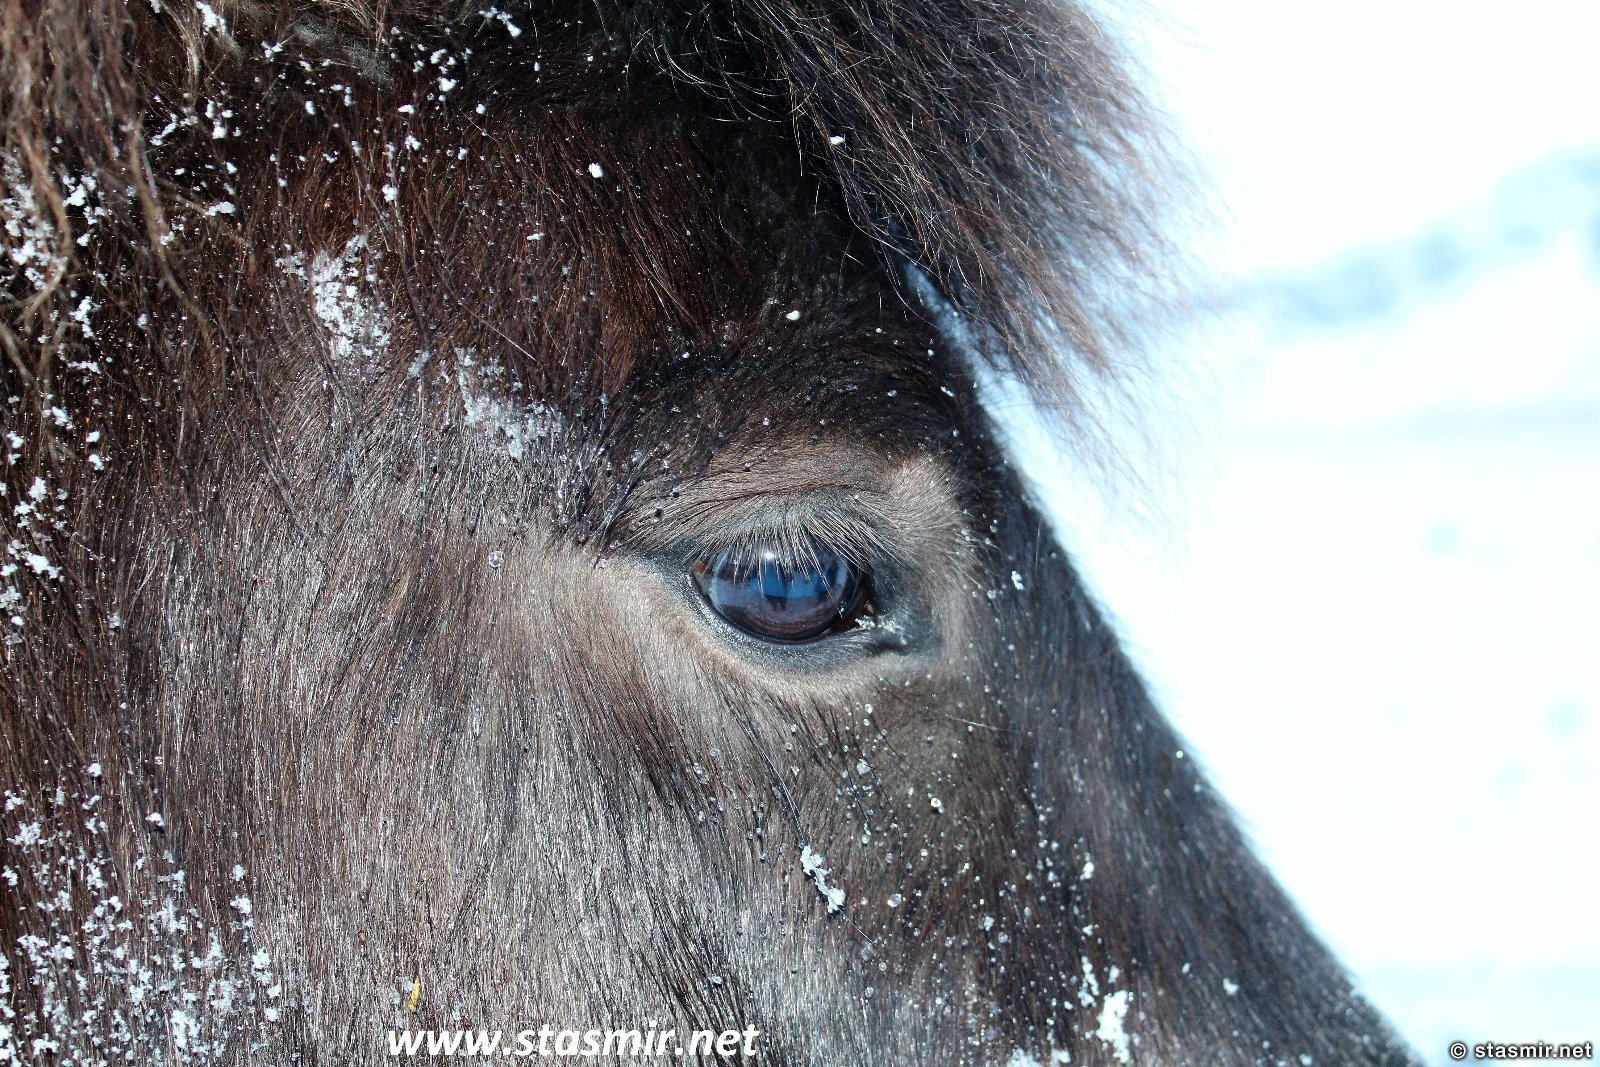 глаза исландской лошадки, исландская порода лошади, исландские лошади зимой, фото Стасмир, photo Stasmir